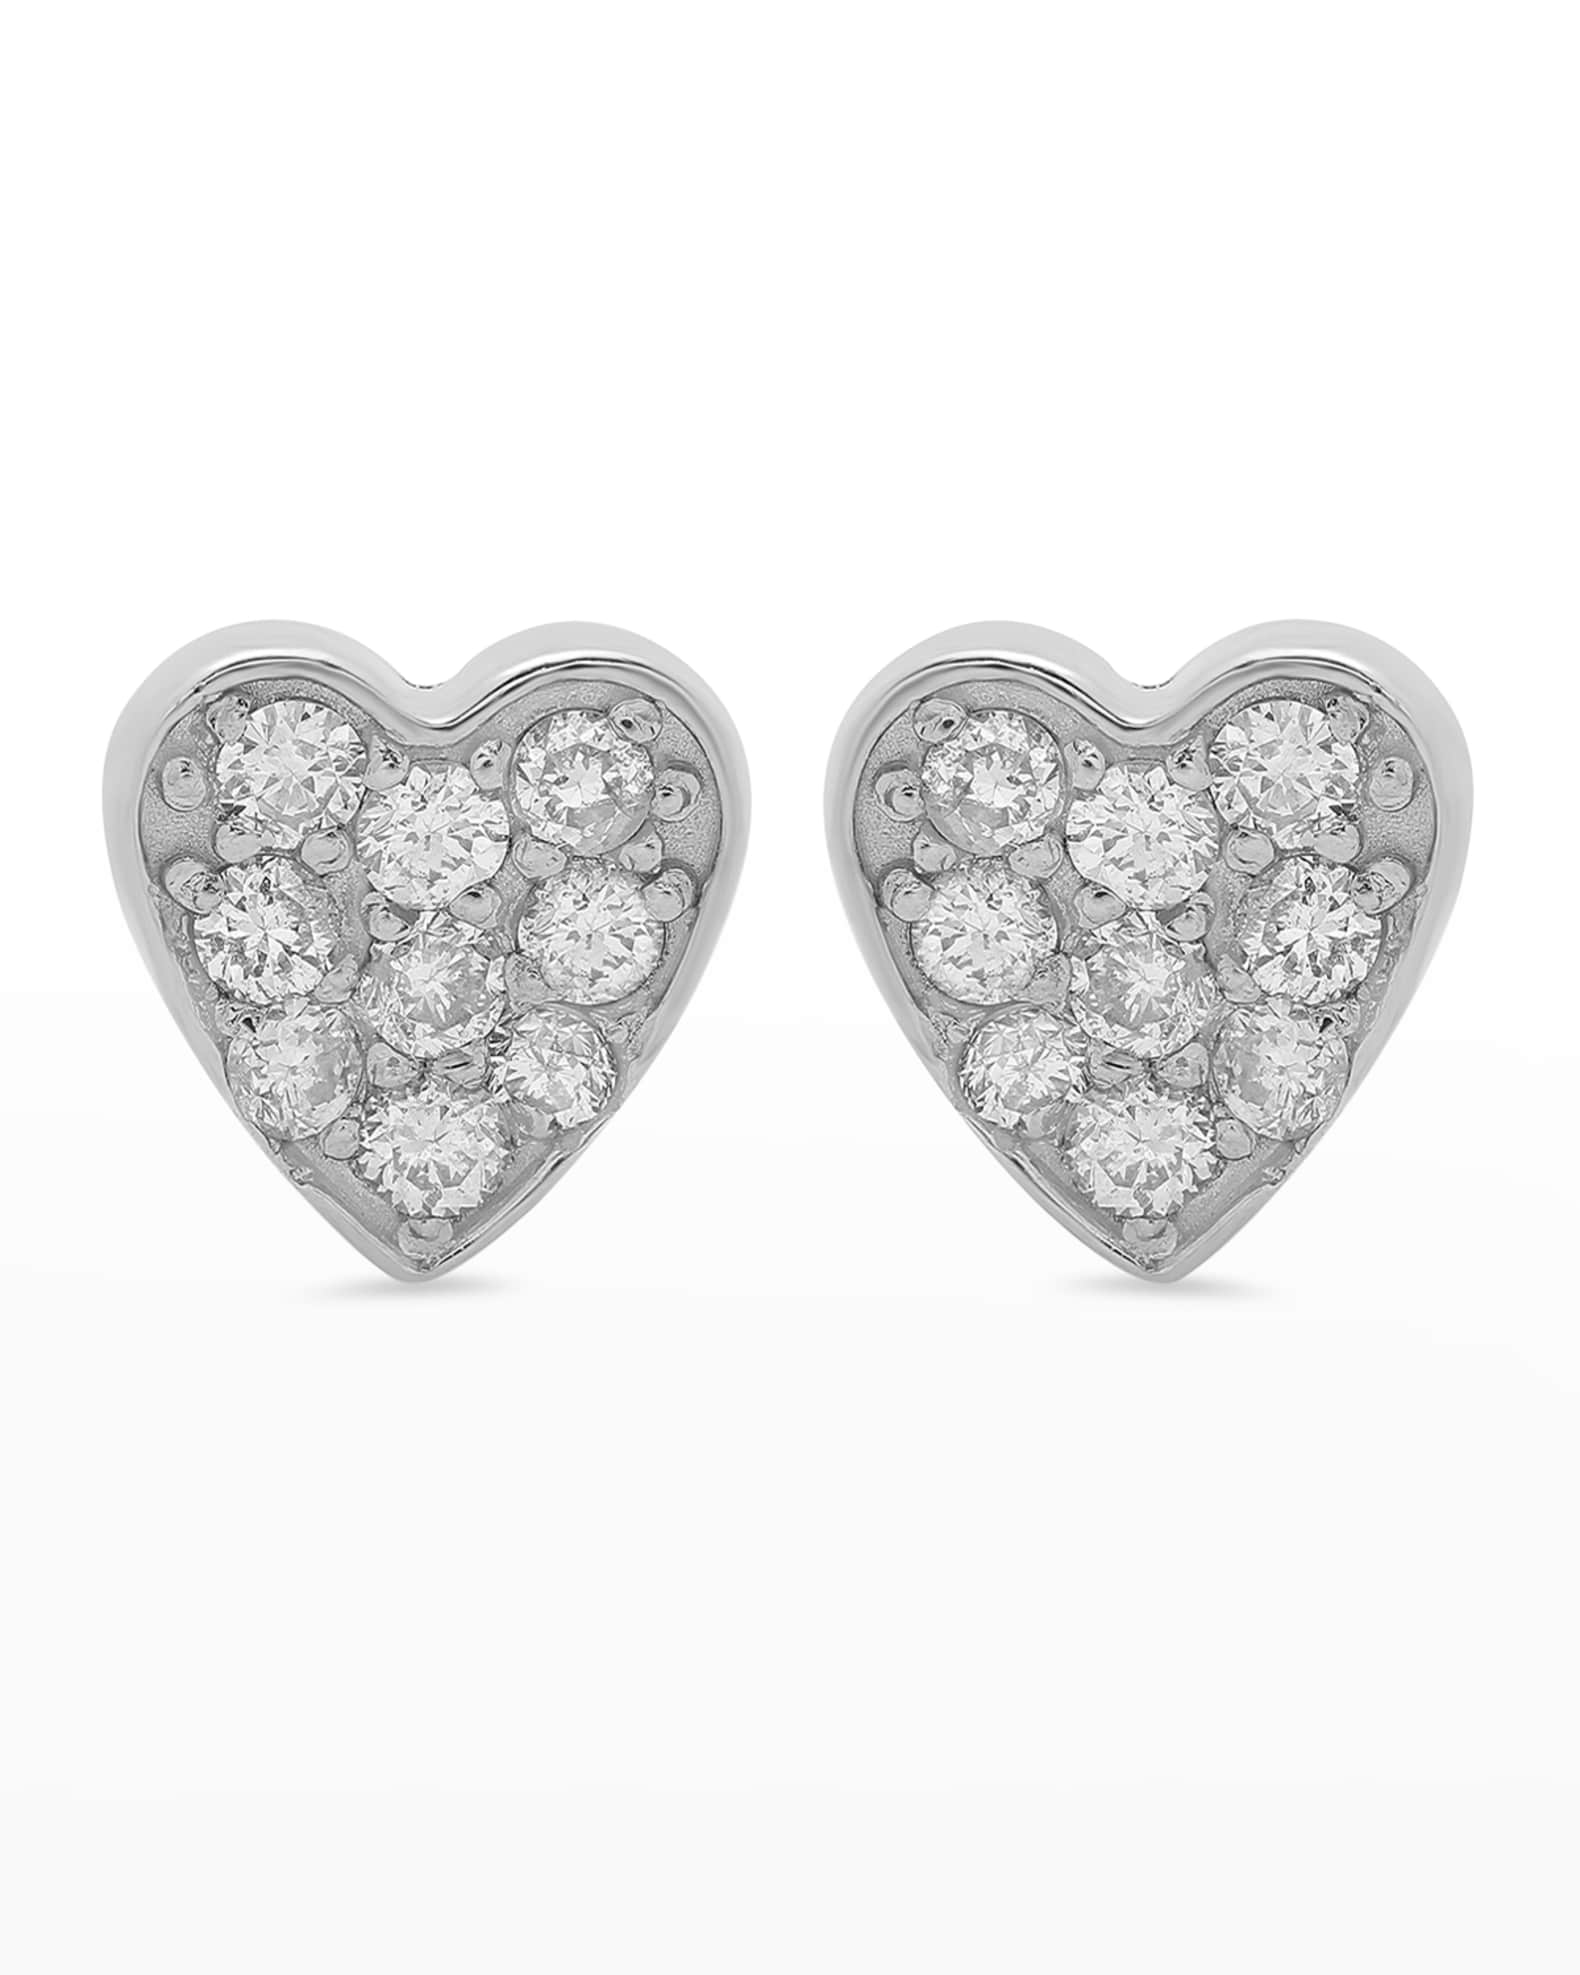 Jennifer Meyer 18k White Gold Diamond Heart Stud Earrings | Neiman Marcus